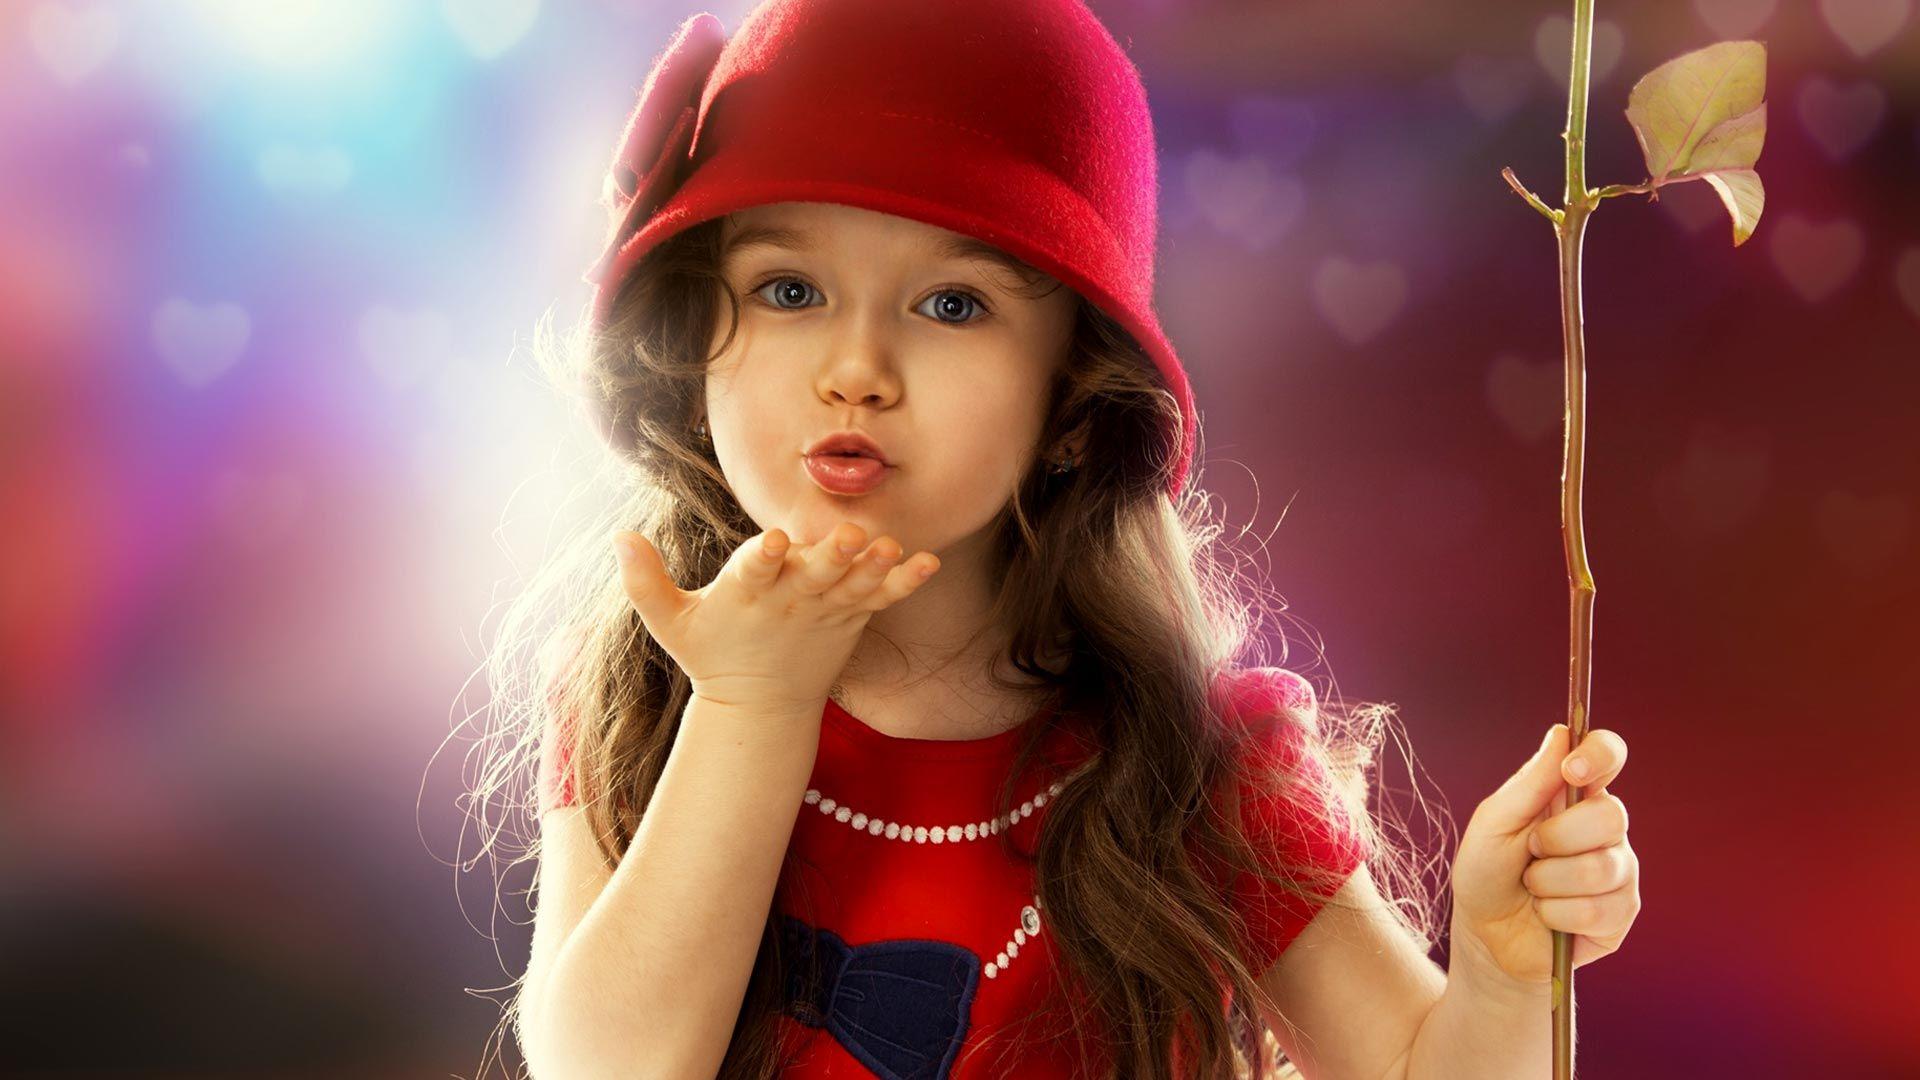 Sweet Little Girl HD Image. HD Wallpaper. Cute baby girl